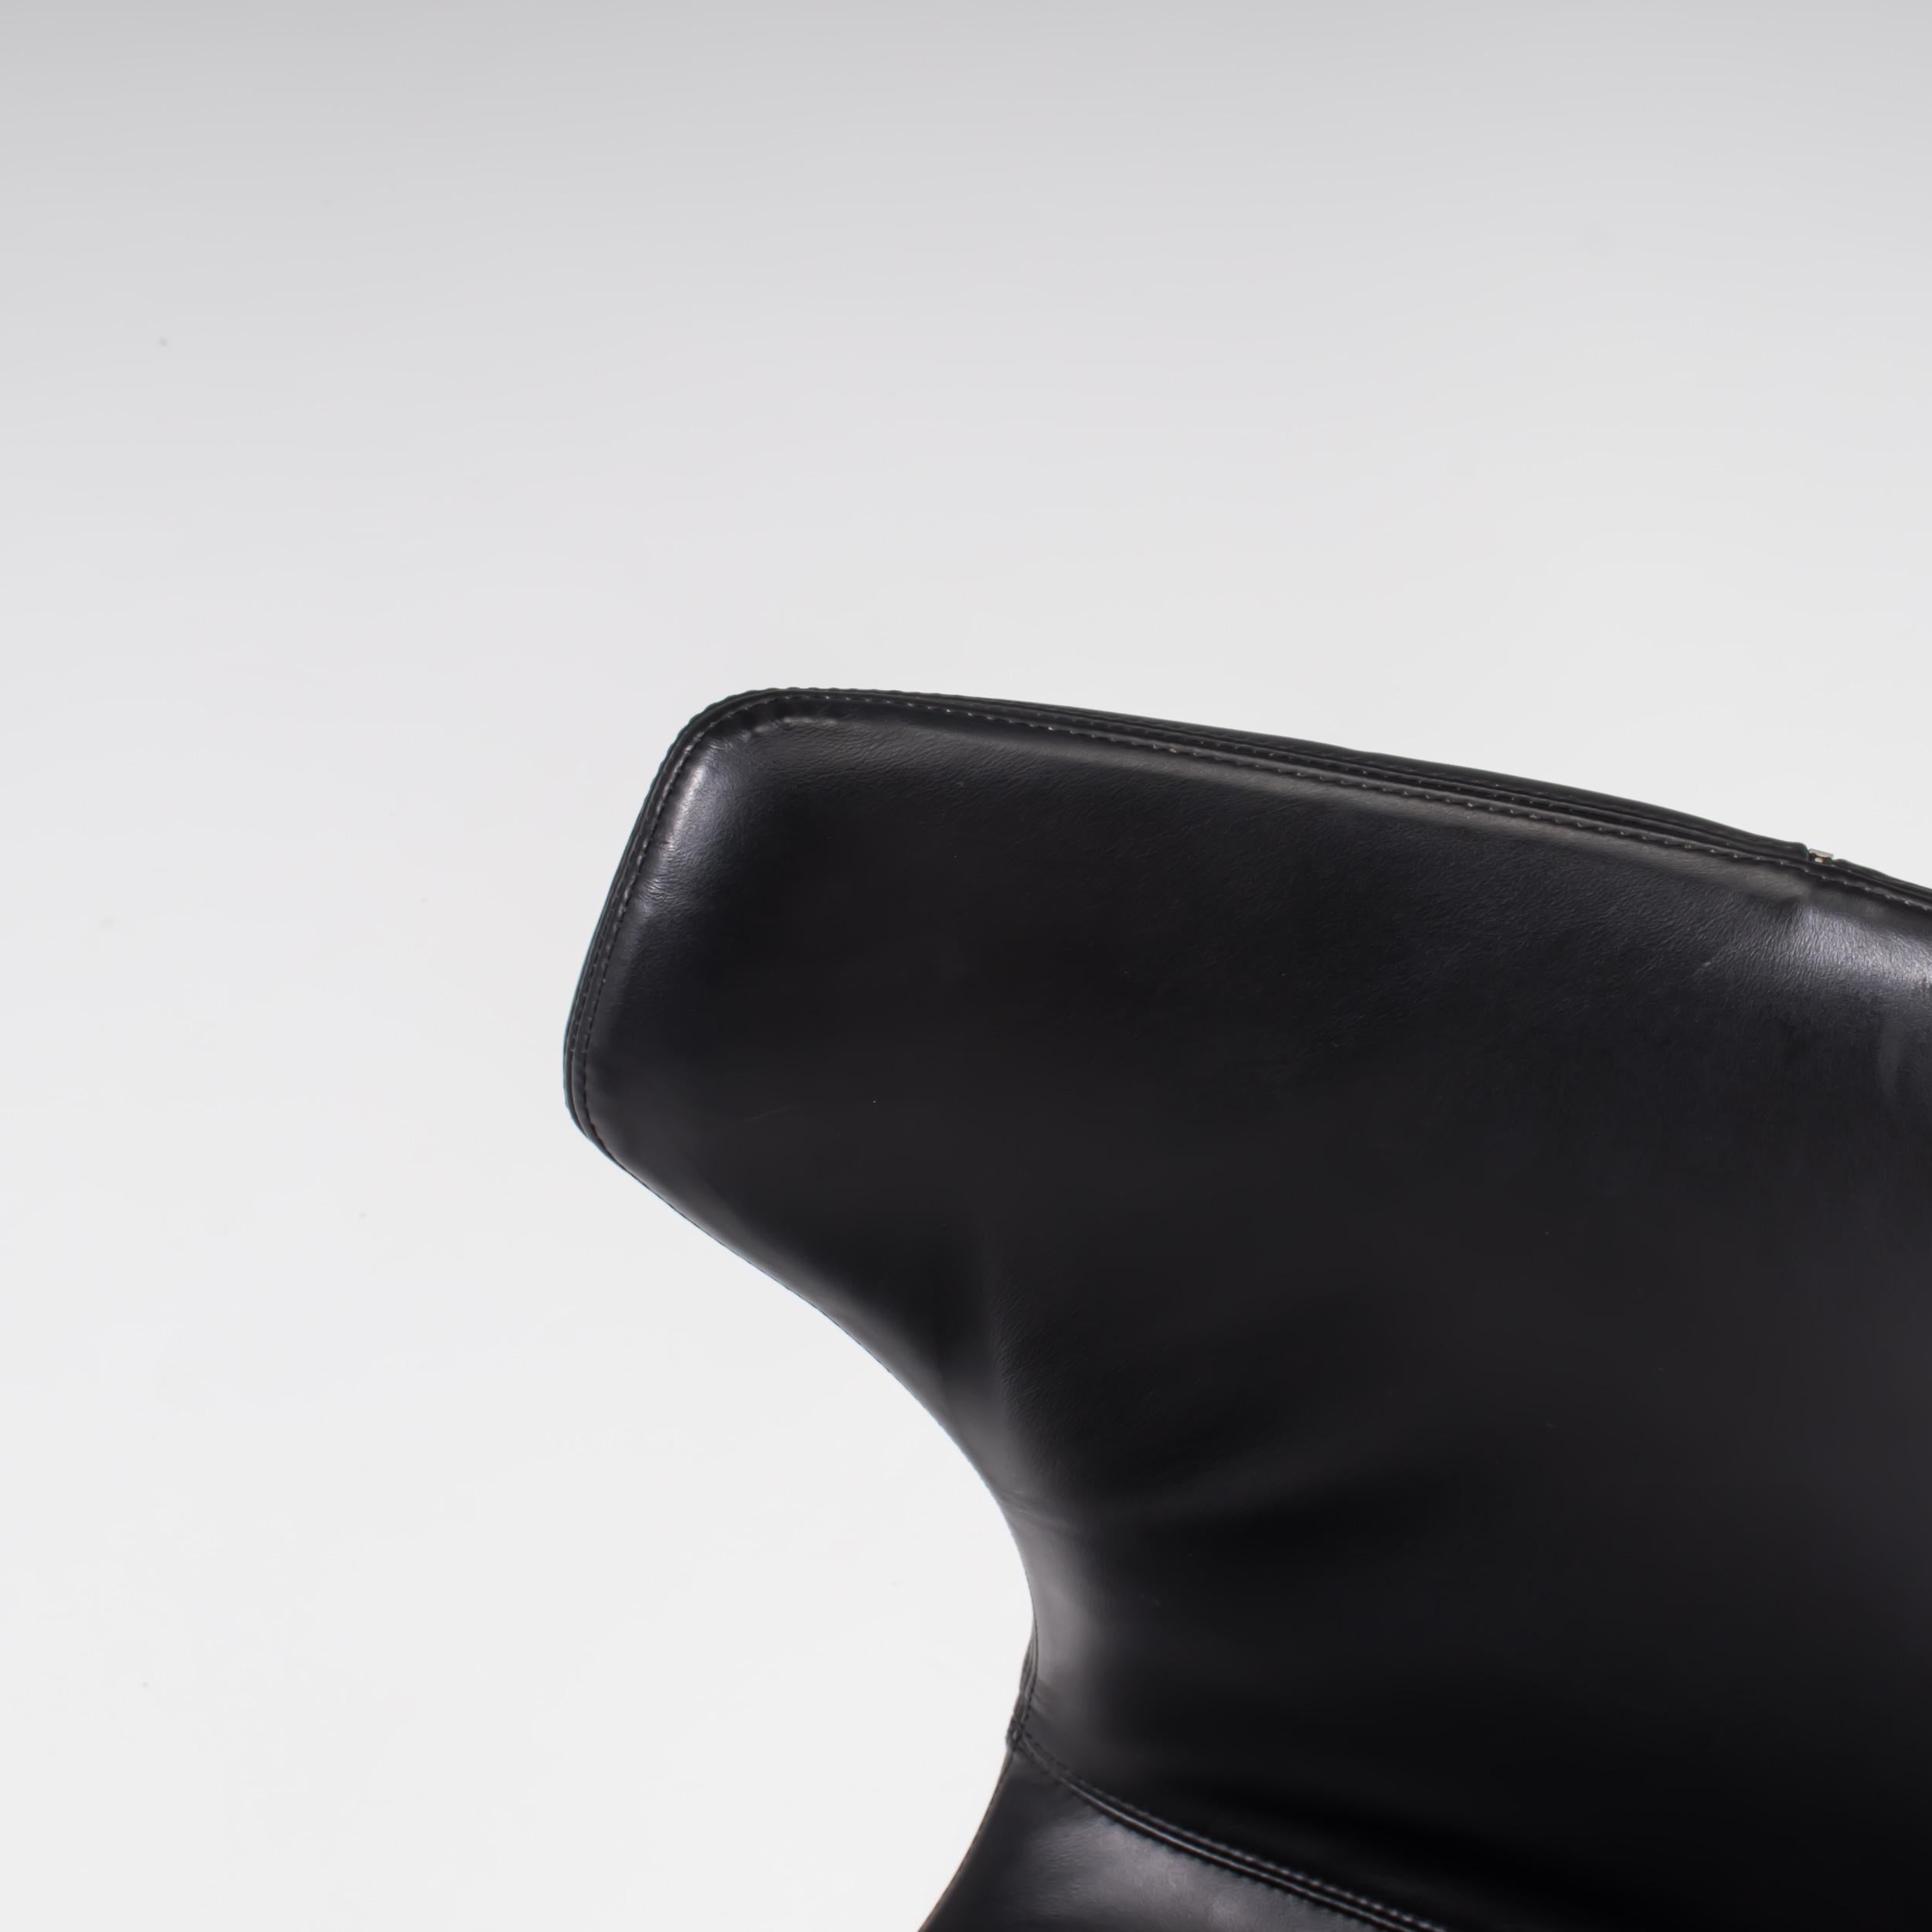 B&B Italia by Naoto Fukasawa Papilio Black Leather Dining Chair 3